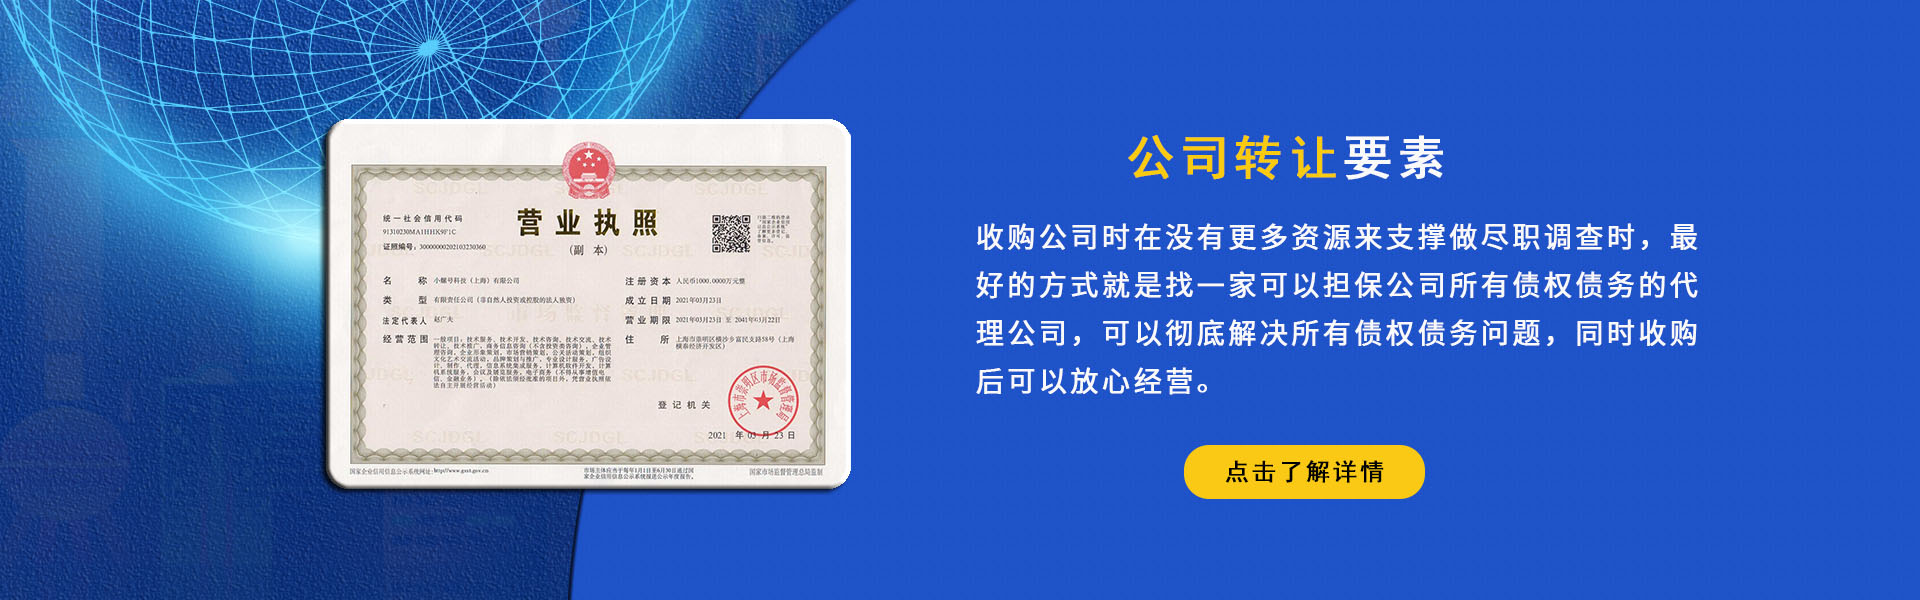 上海公司转让,公司执照转让平台网：400-018-2628